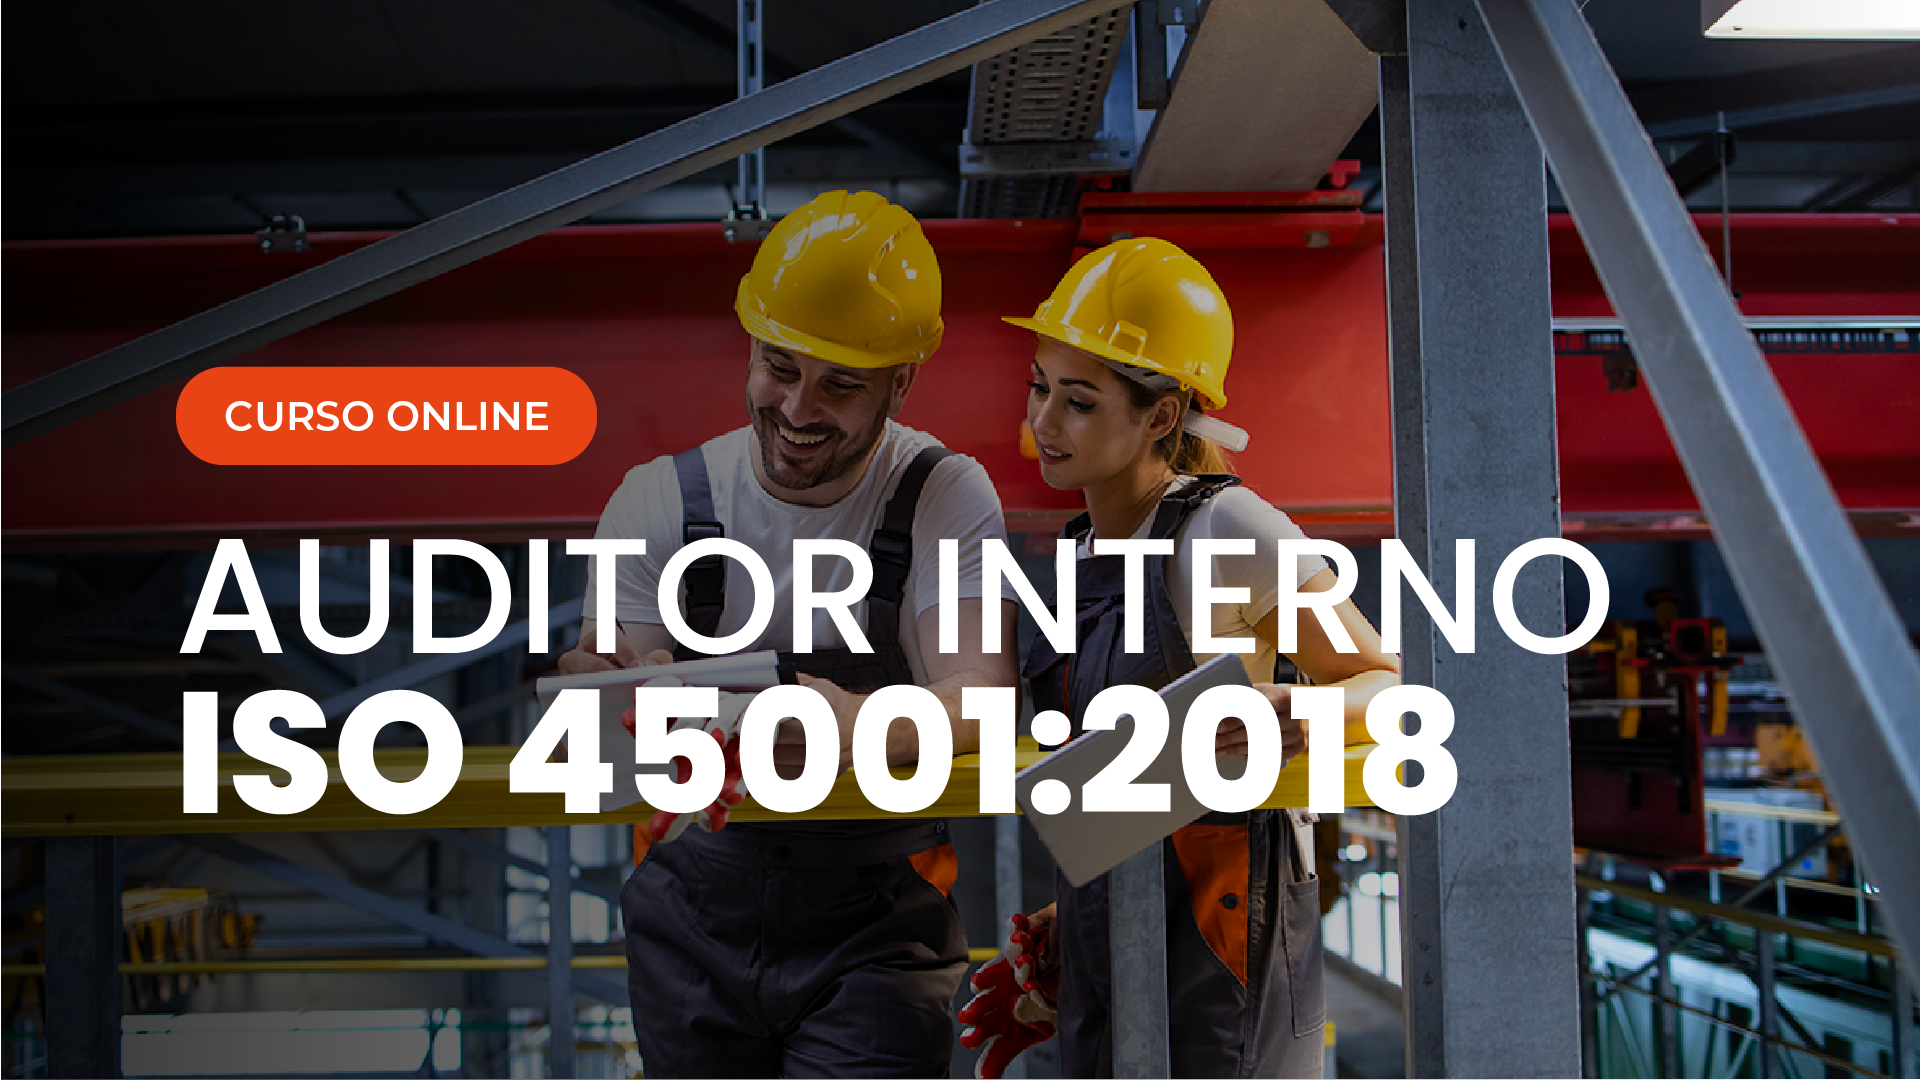 Curso Online de Auditor Interno ISO 45001 Sistema de Gestão de Saude e Segurança Ocupacional